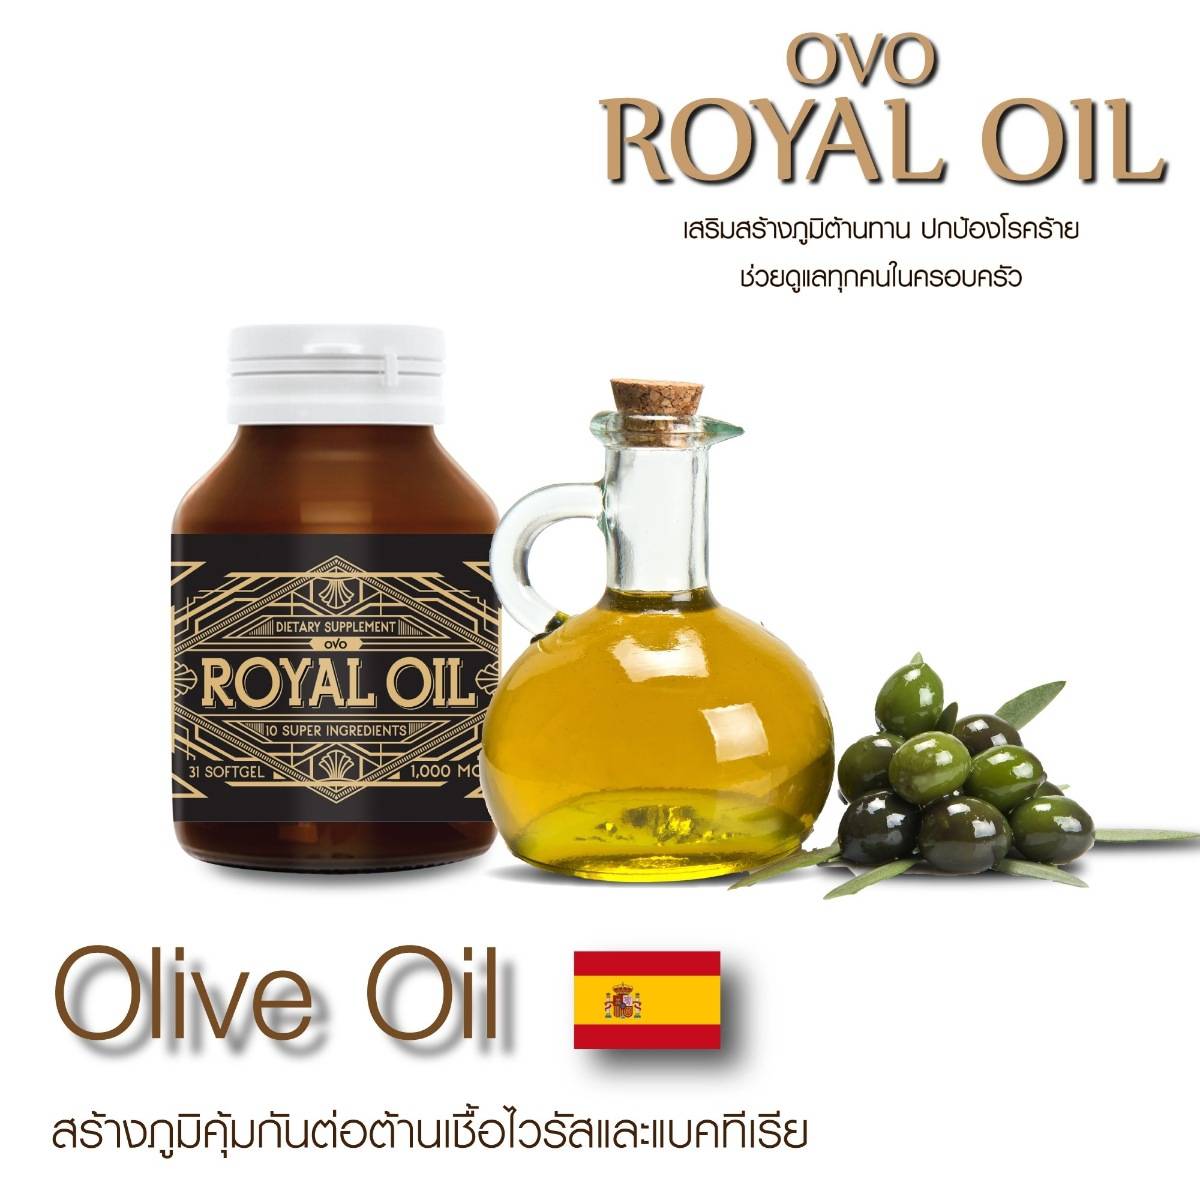 ส่วนประกอบ royal oil รอยัลออย 5